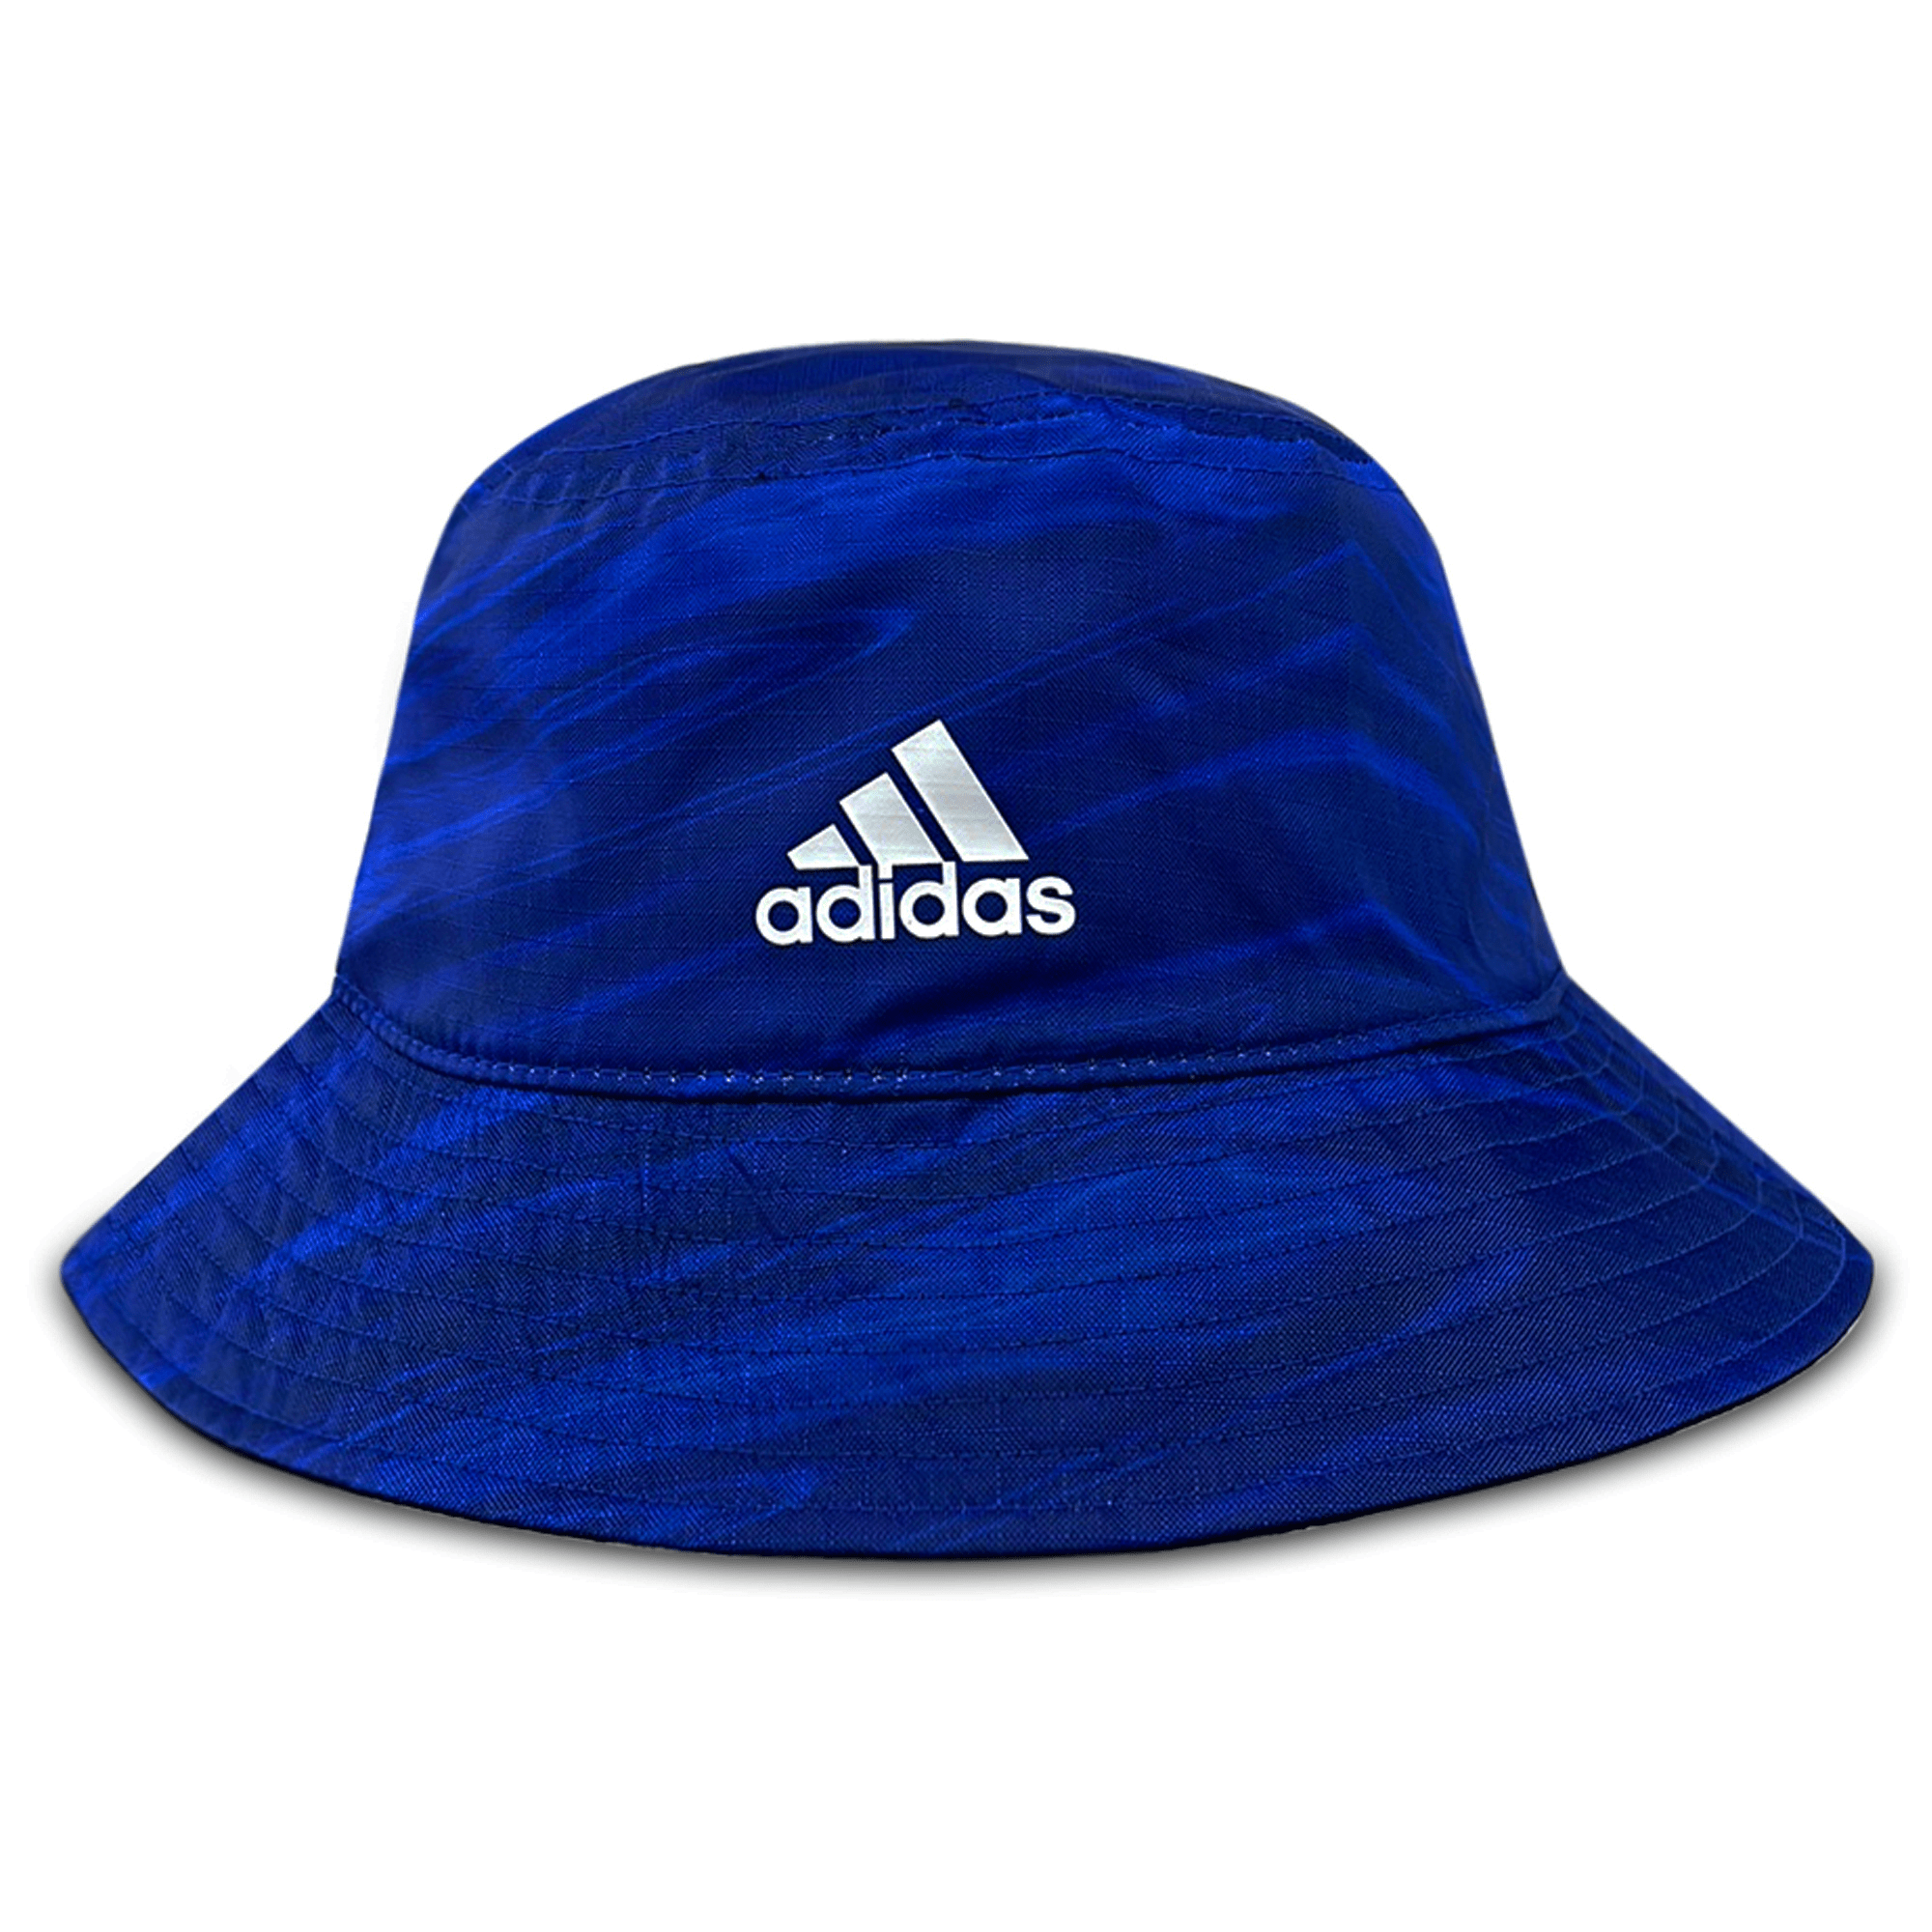 St. Louis Blues Bucket Hat